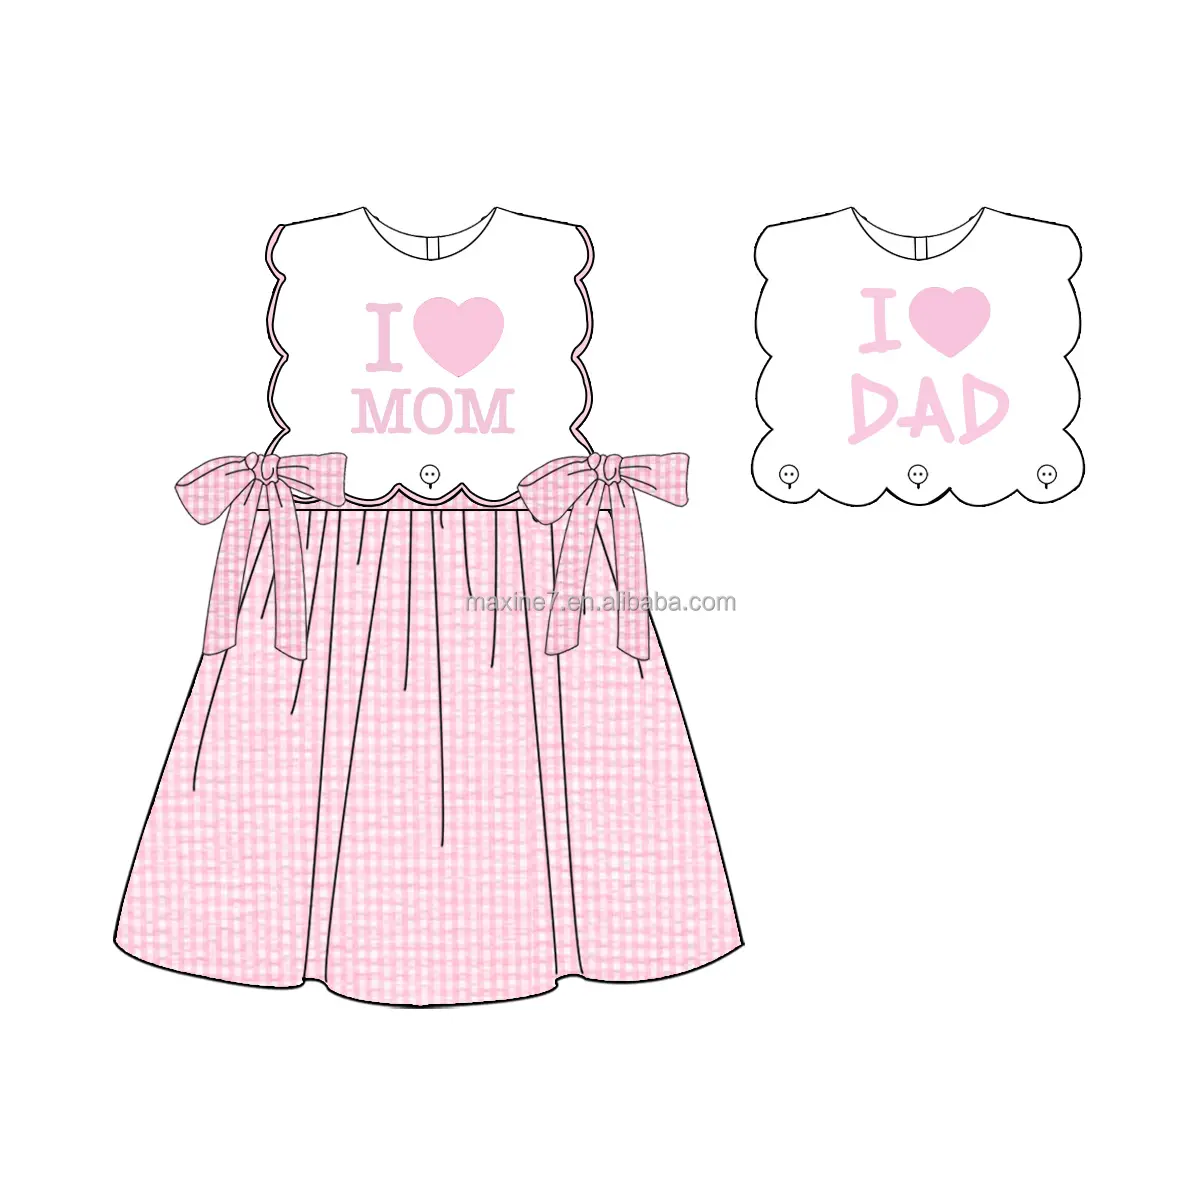 नए आगमन वाले कस्टम बच्चों के कपड़े, मुझे माँ/पिताजी एप्लिक स्कैलप ड्रेस, रिवर्सिबल सीरसुकर टॉडलर गर्ल ड्रेस बहुत पसंद हैं